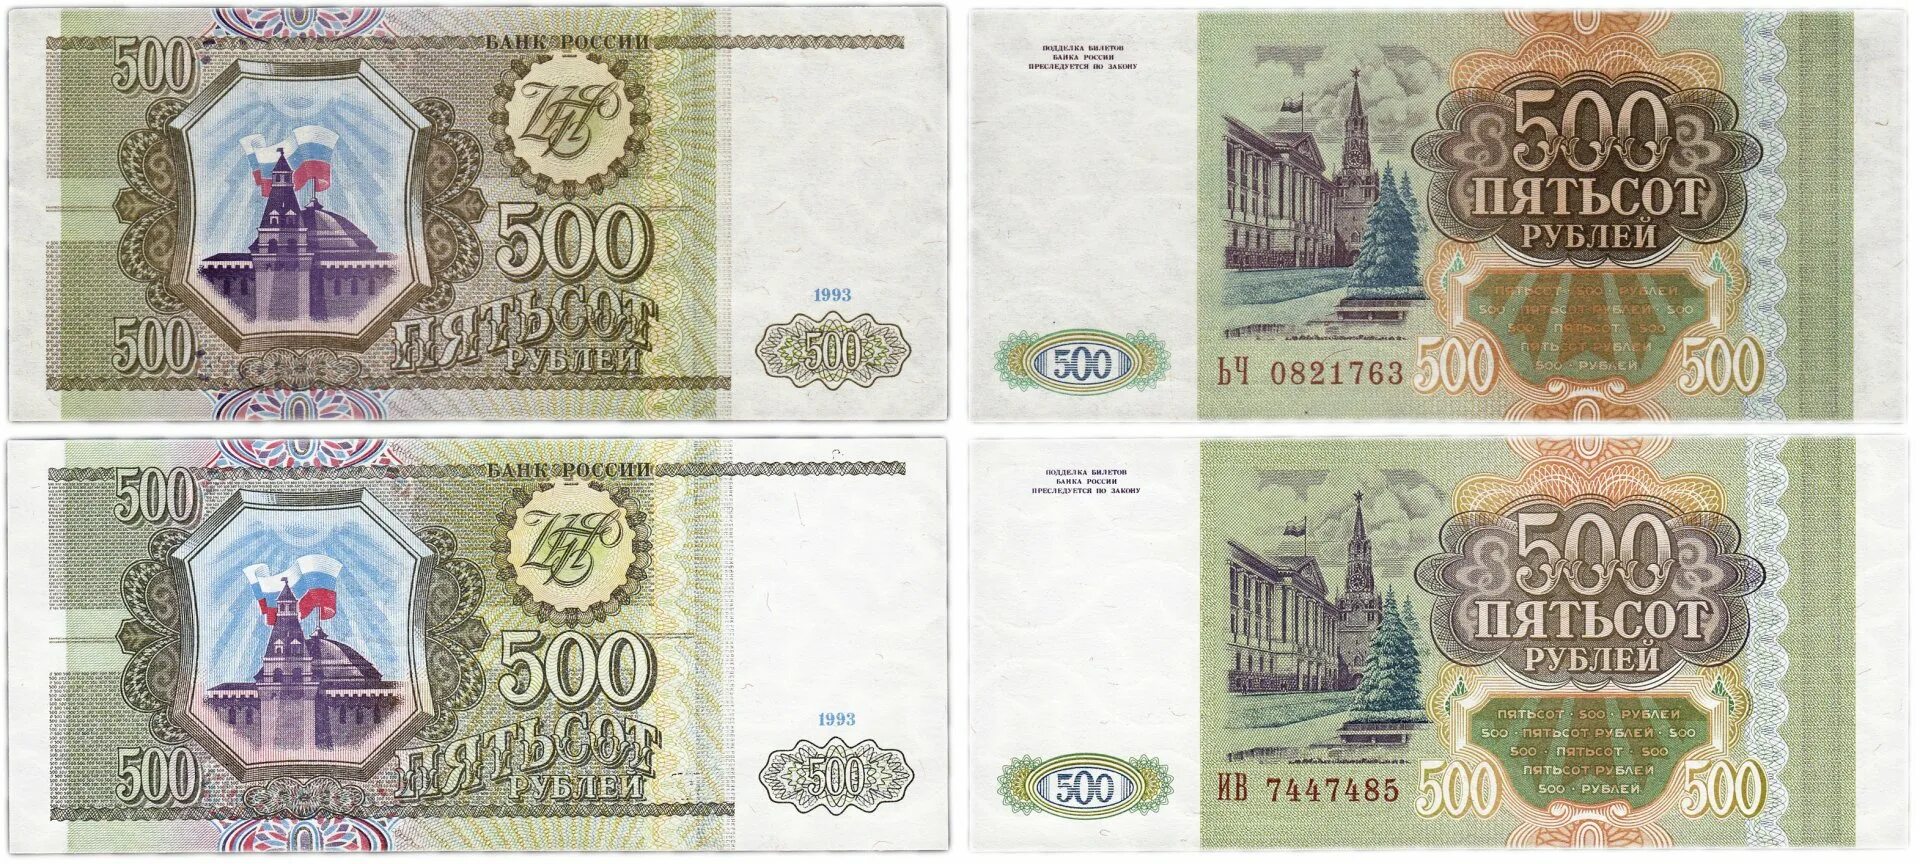 500 Тысяч рублей 1993. Пятьсот рублей 1993 года. 500 Рублей 1993 года бумажные. 100 И 500 рублей 1993 года бумажные. Две 500 в рублях